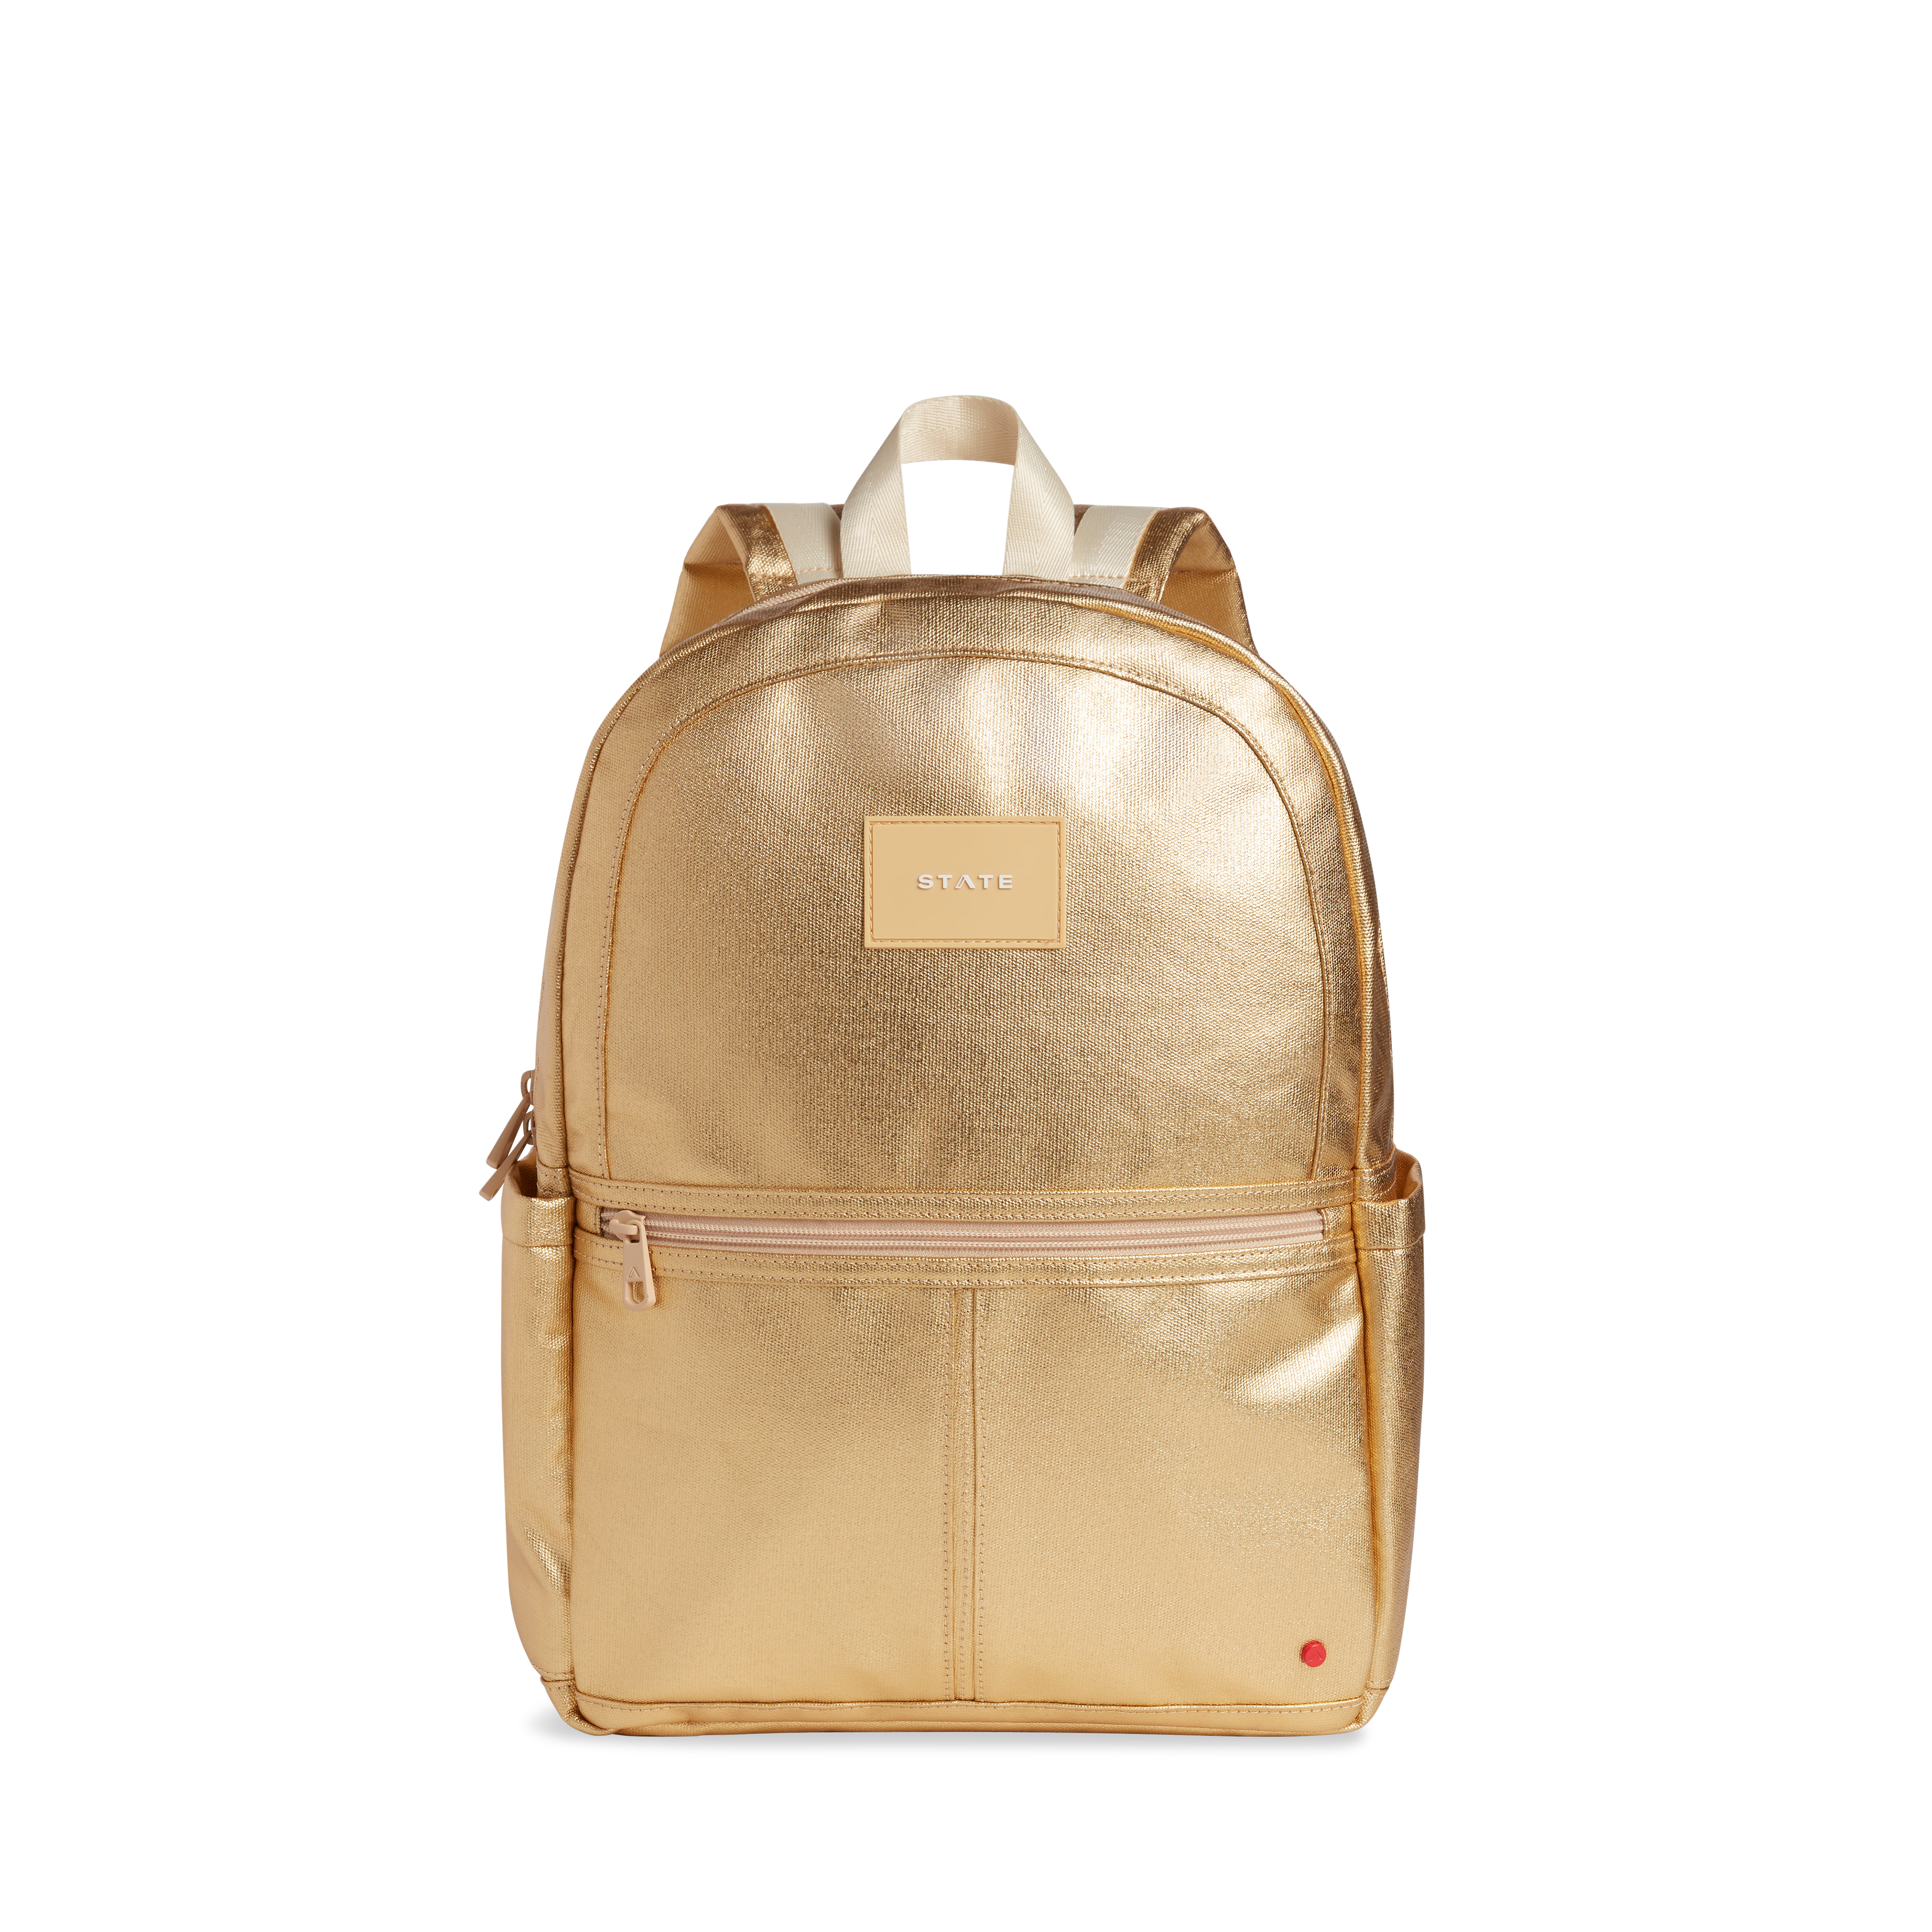 KK Gold Backpack